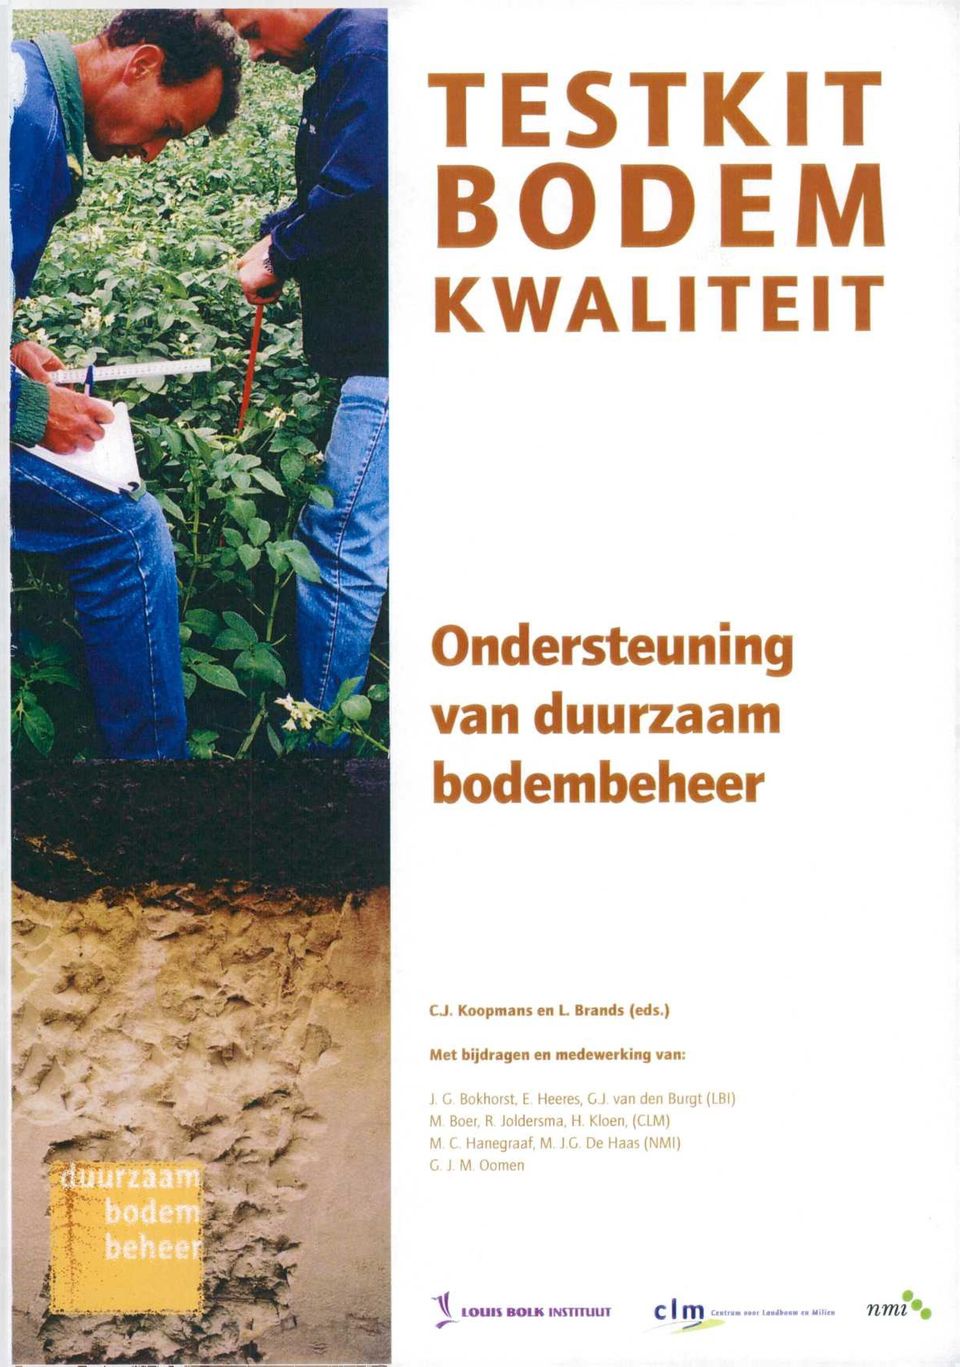 ) Met bijdragen en medewerking van: J G Bokhorst, E Heeres, G.J. van den Bürgt (LBI) M Boer, R Joldersma, H.